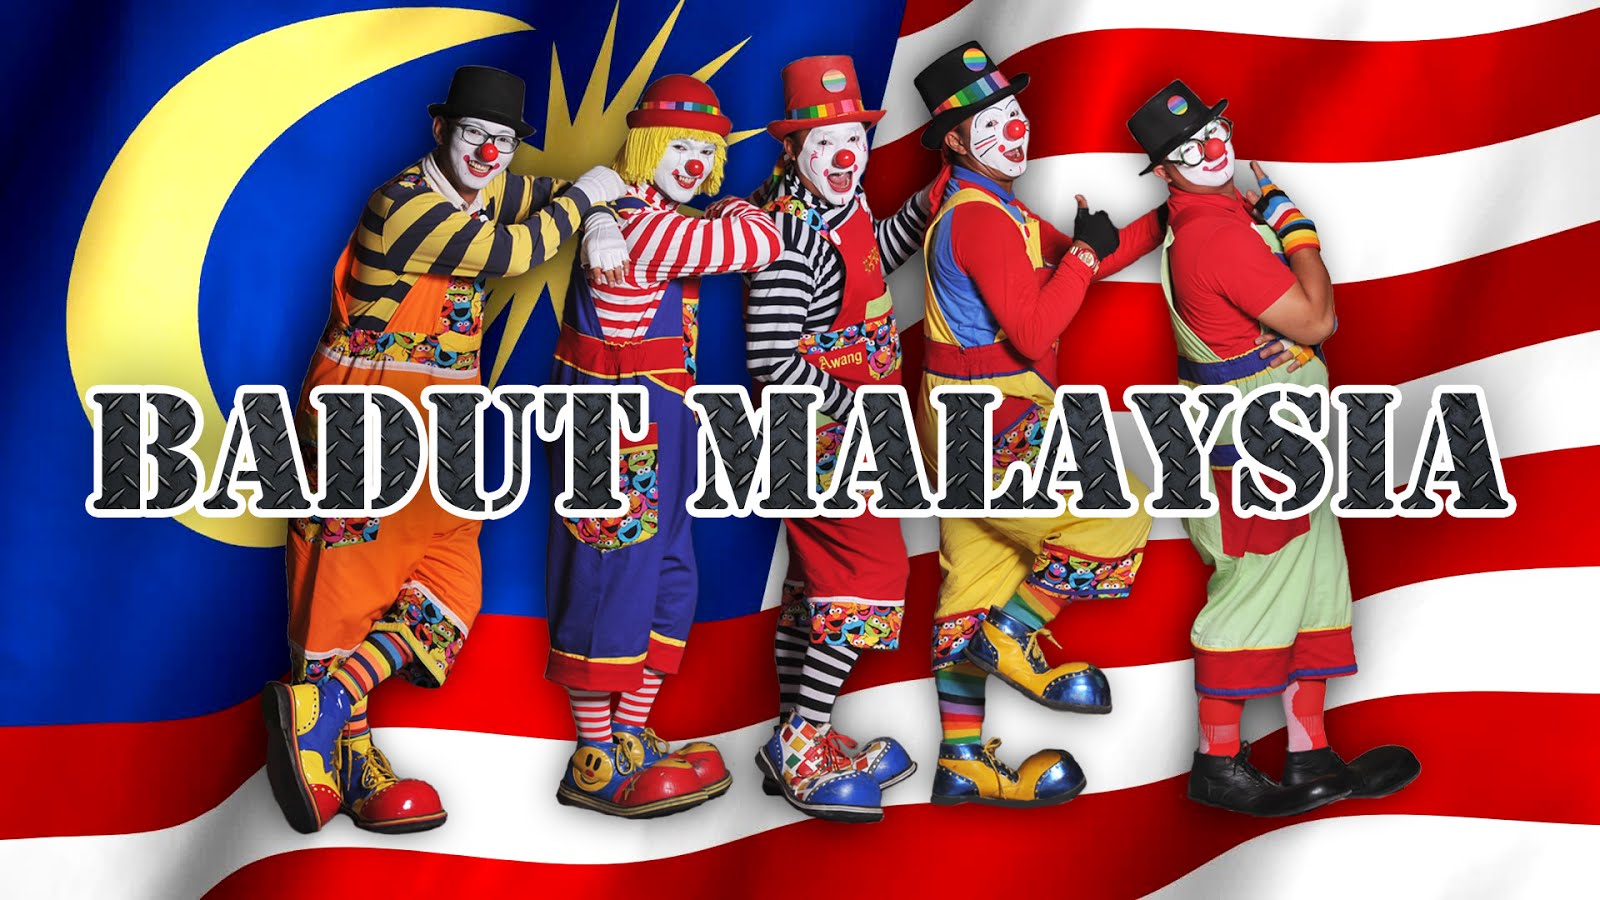 [clown service] [clown badut] [perkhidmatan badut] [badut malaysia] [clown in malaysia]